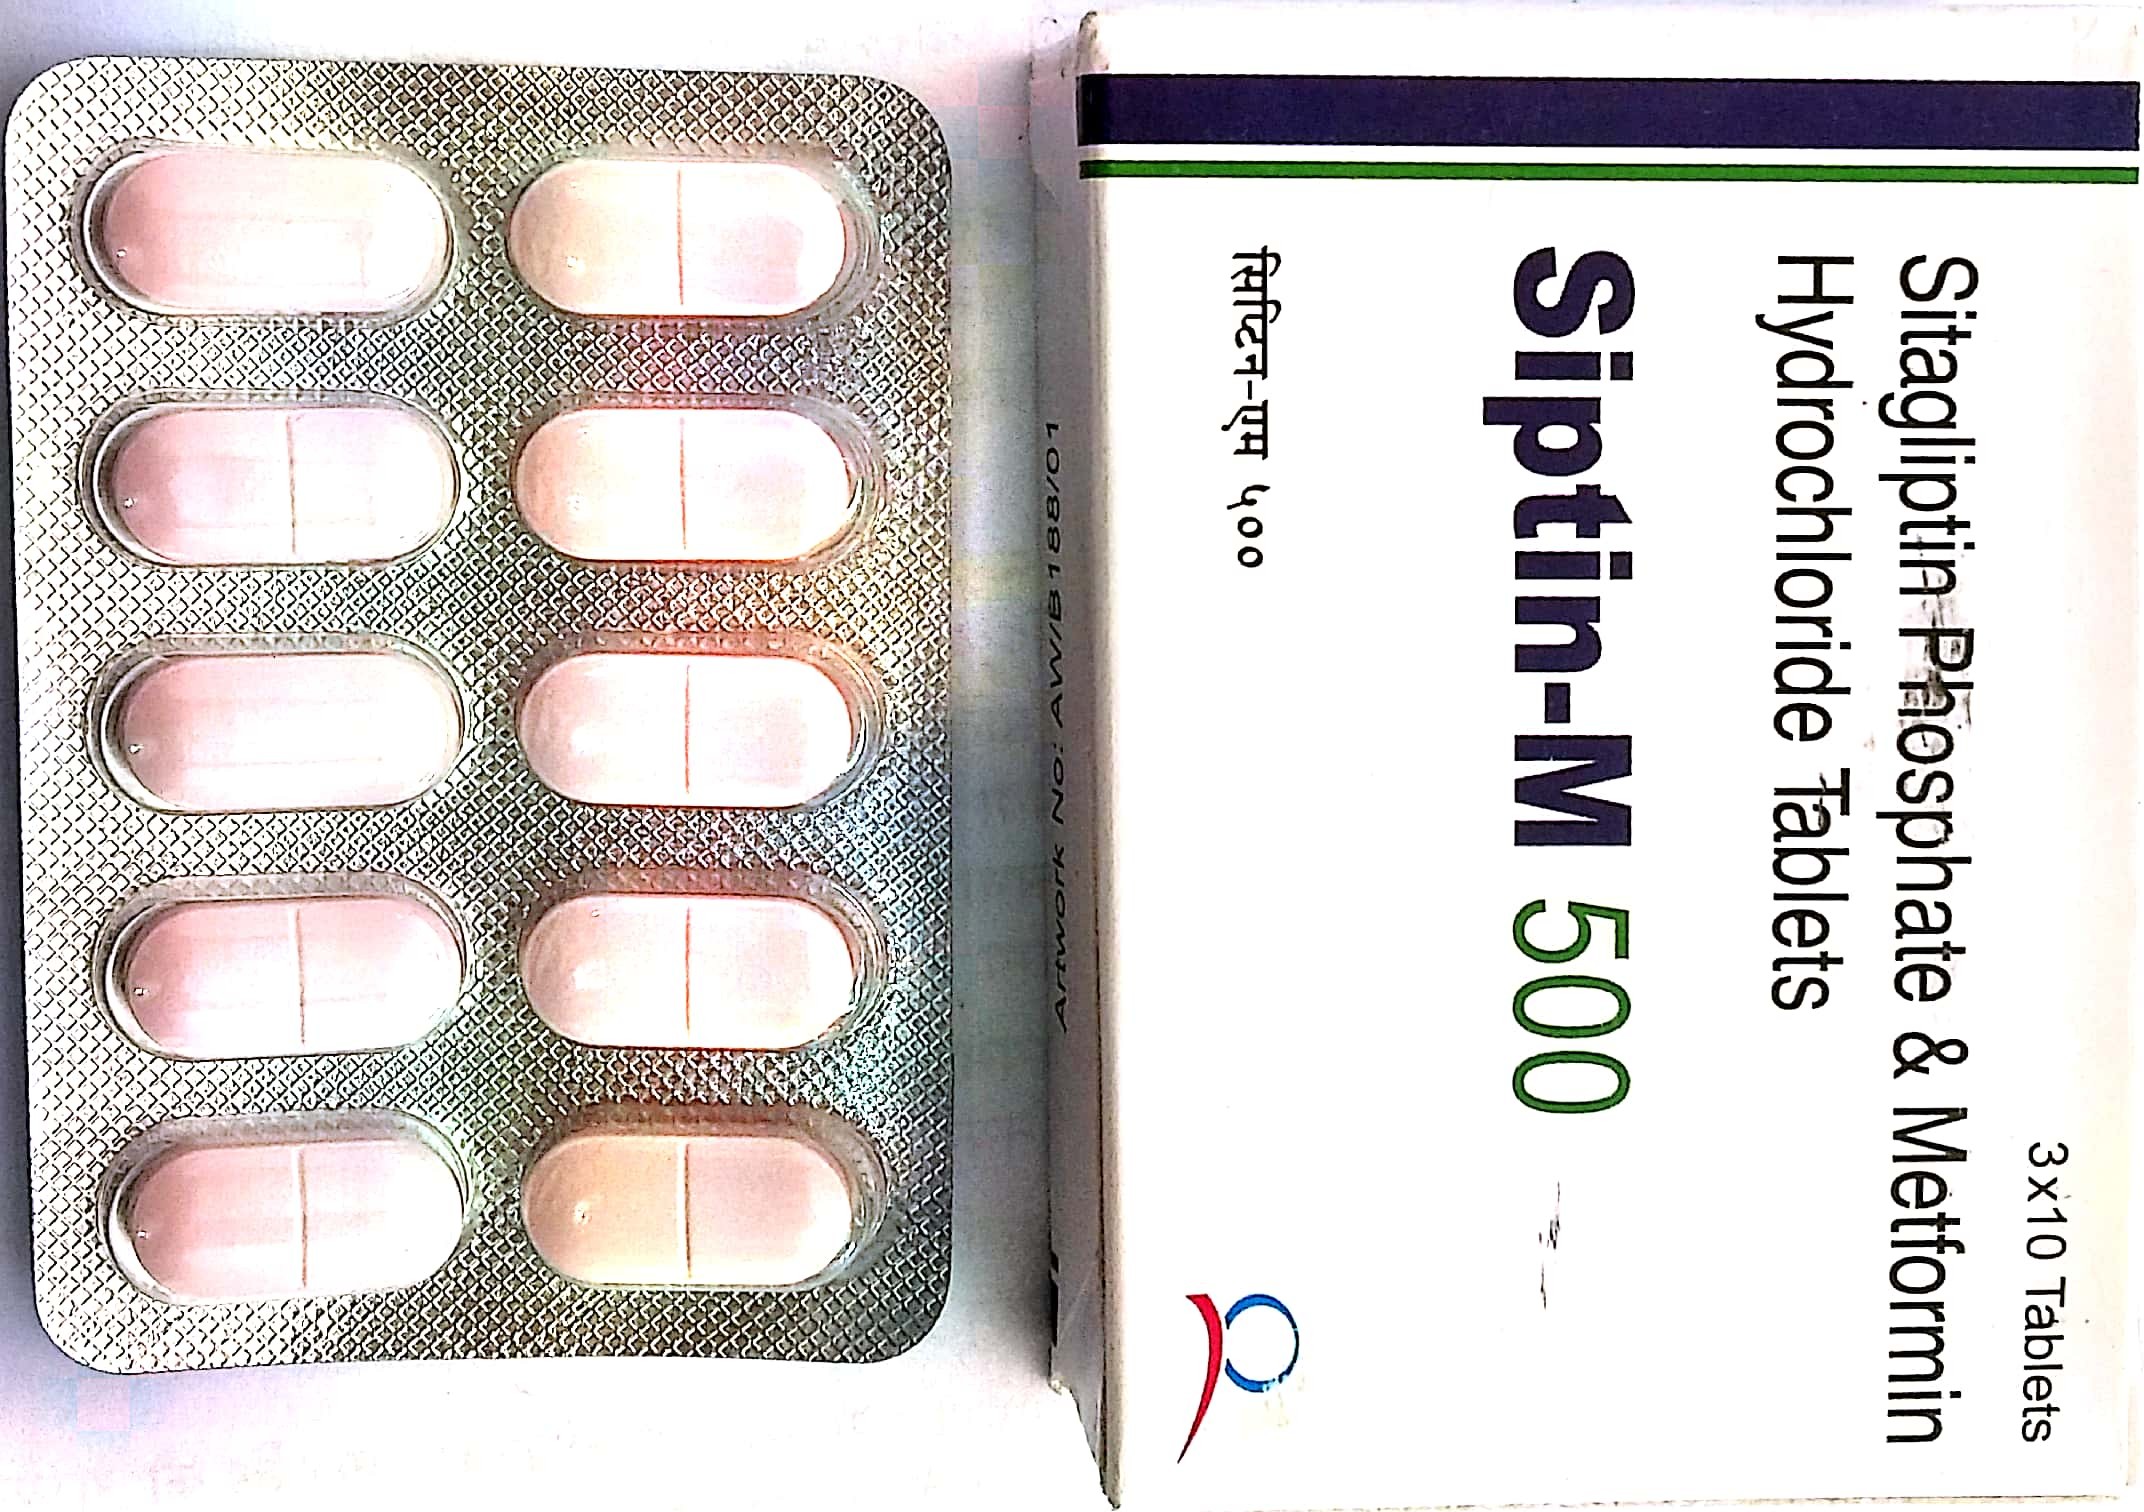 Siptin M-500mg Tablet